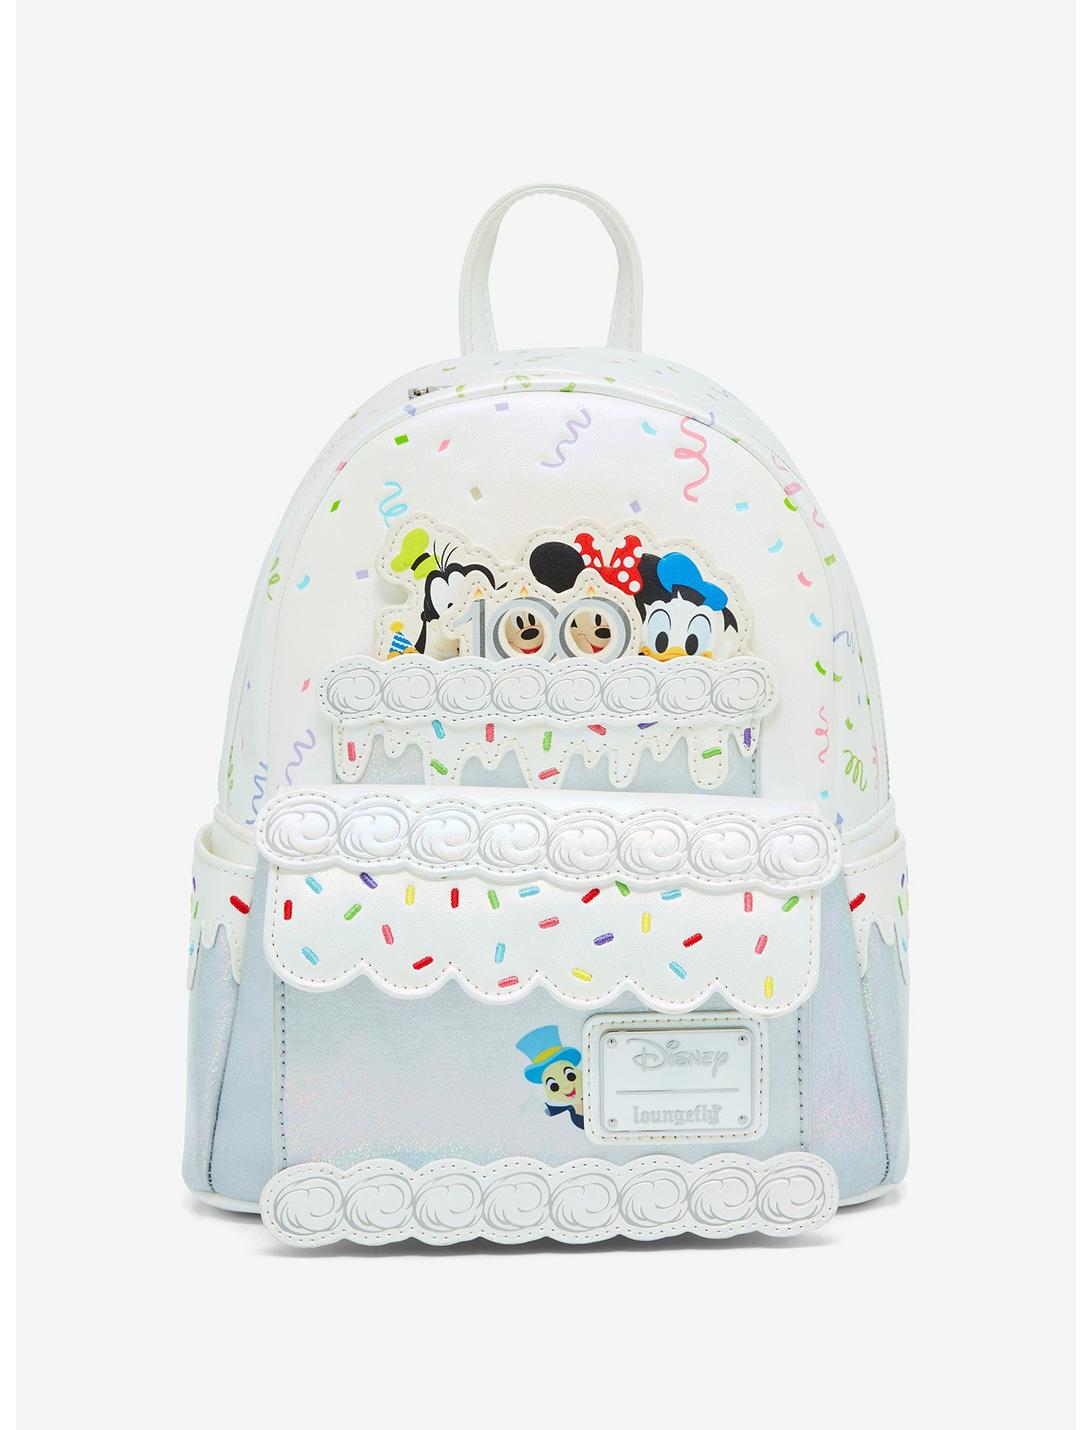 Loungefly Disney 100 Celebration Cake Mini Backpack, , hi-res